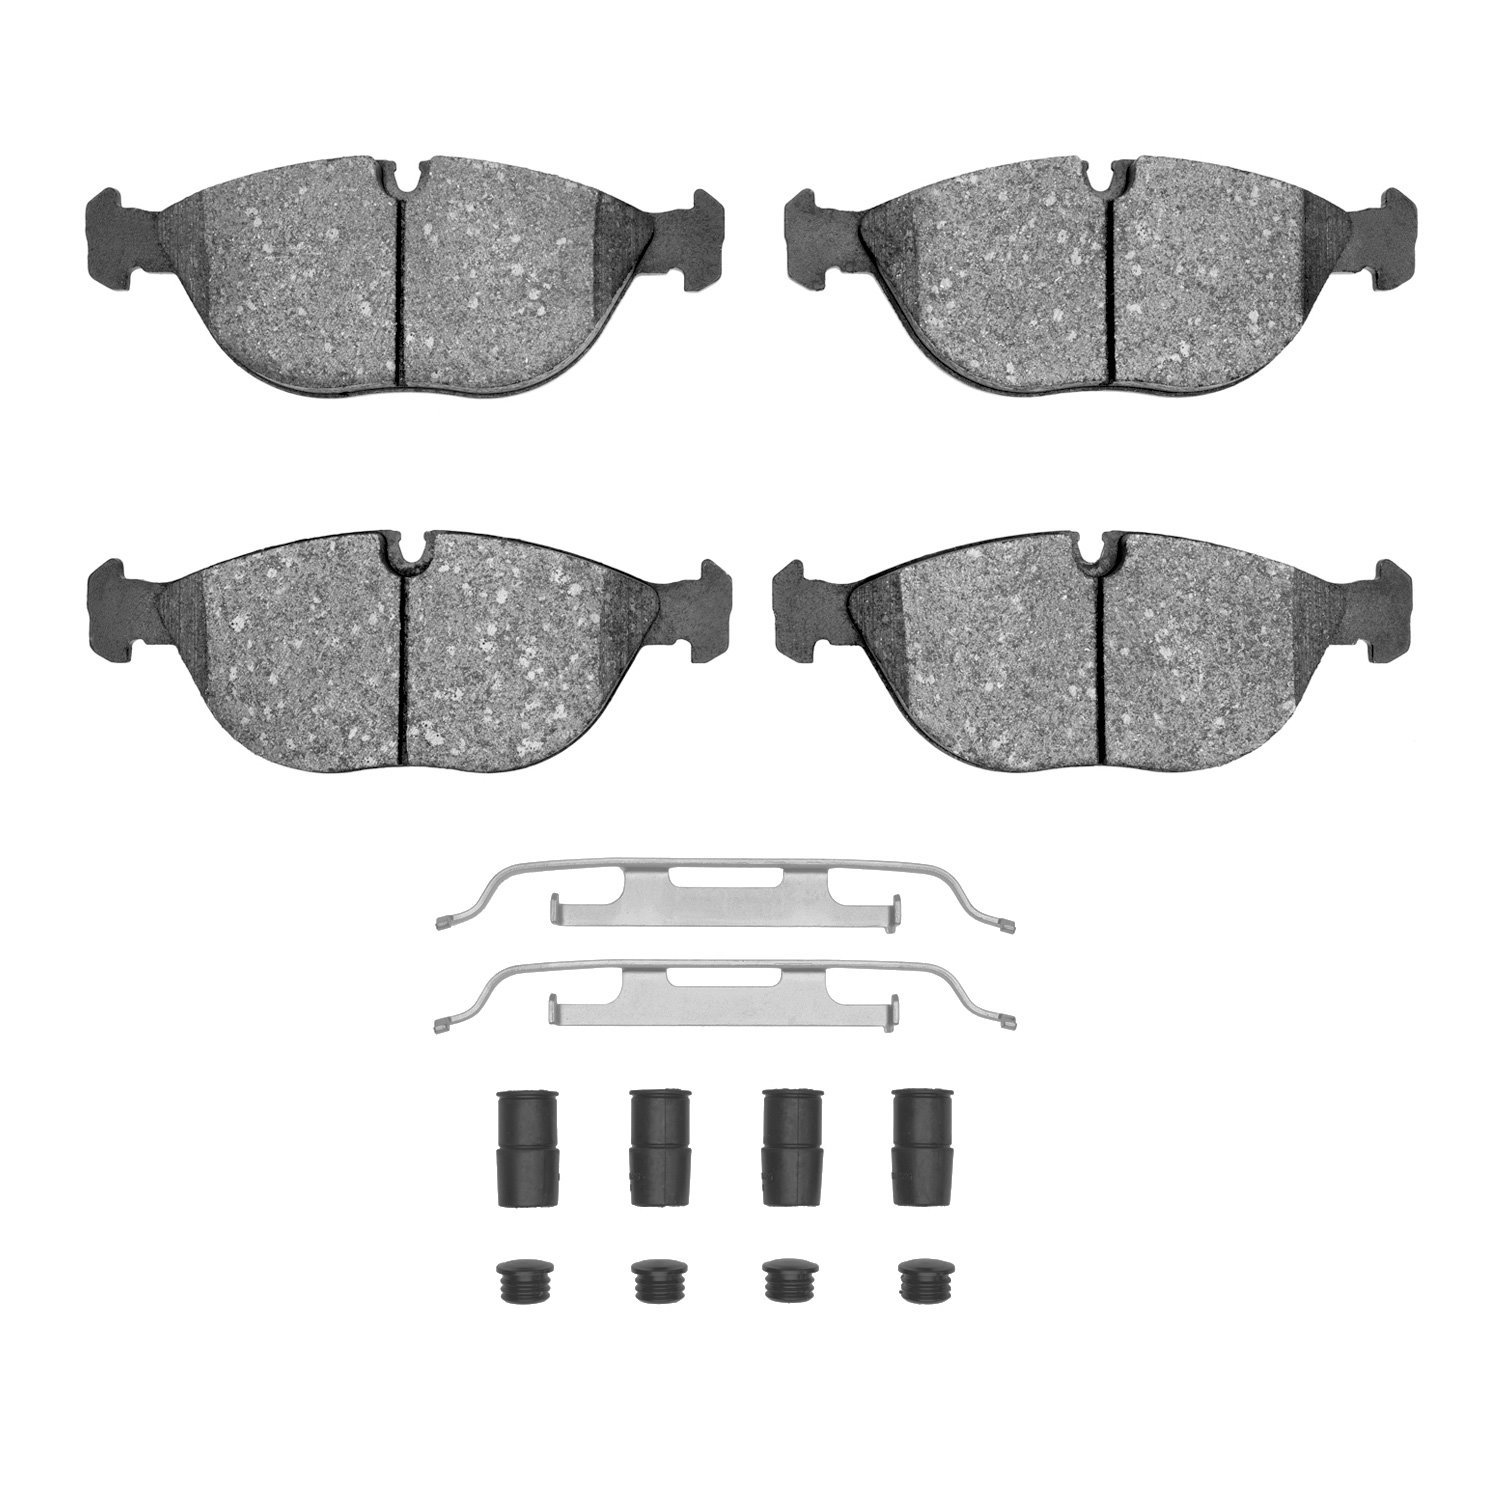 Ceramic Brake Pads & Hardware Kit, 1995-2006 Fits Multiple Makes/Models, Position: Front